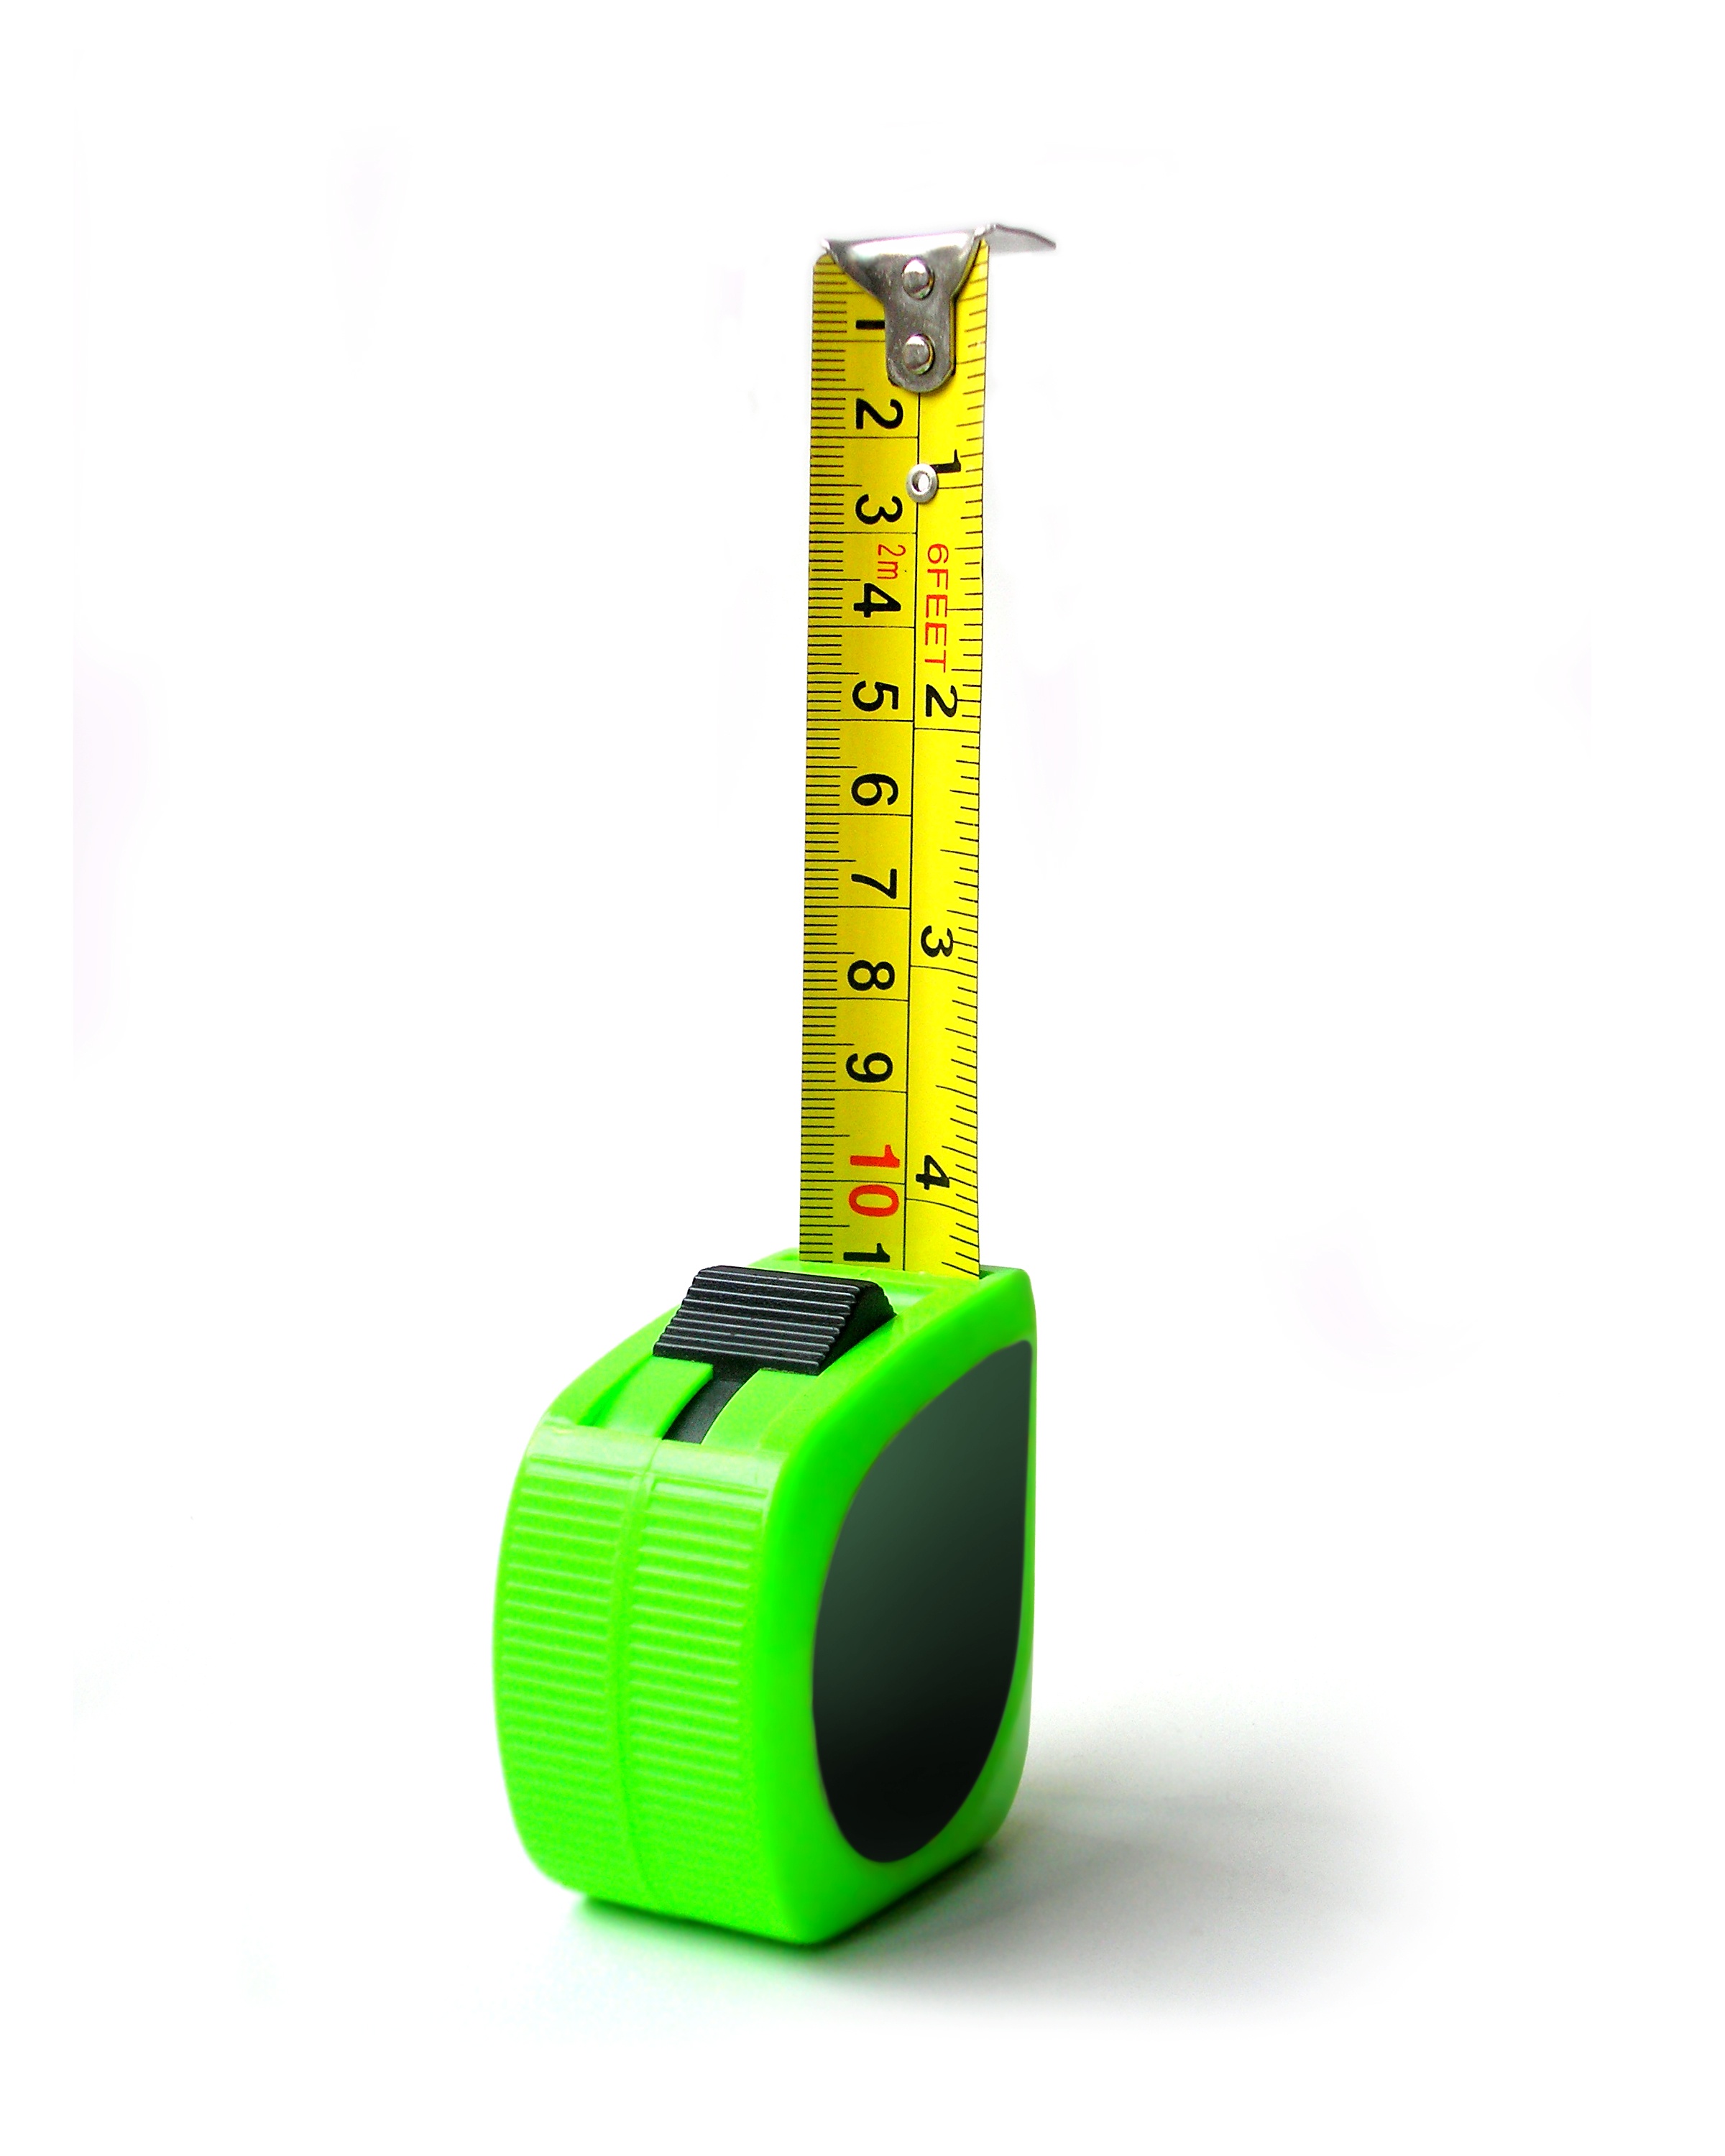 measuring_tape